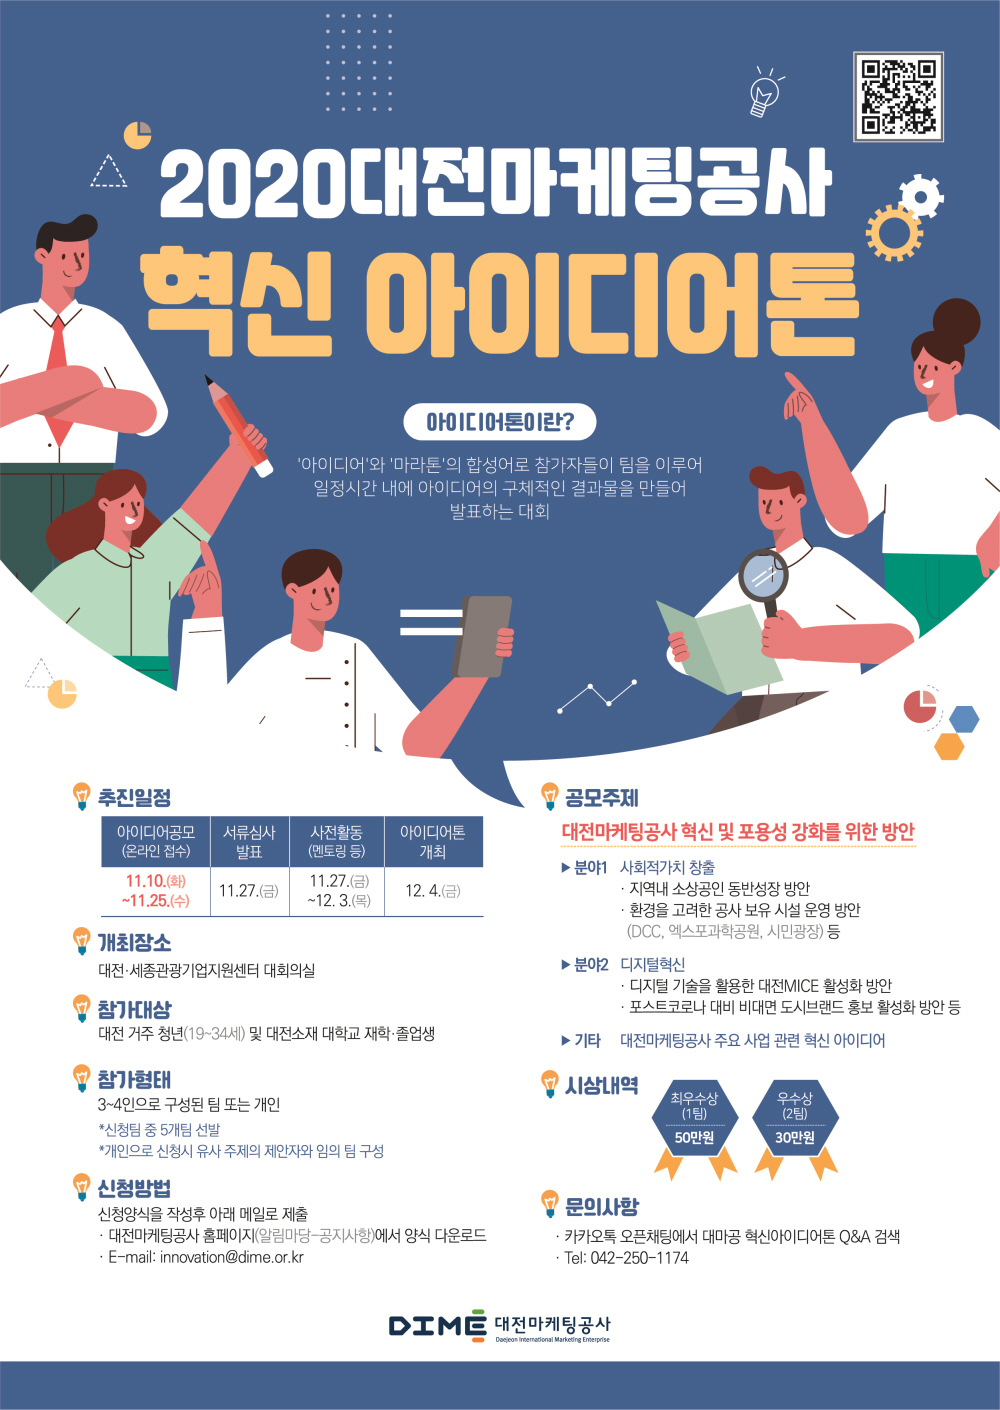 2020 대전마케팅공사 혁신 아이디어톤 개최 공고